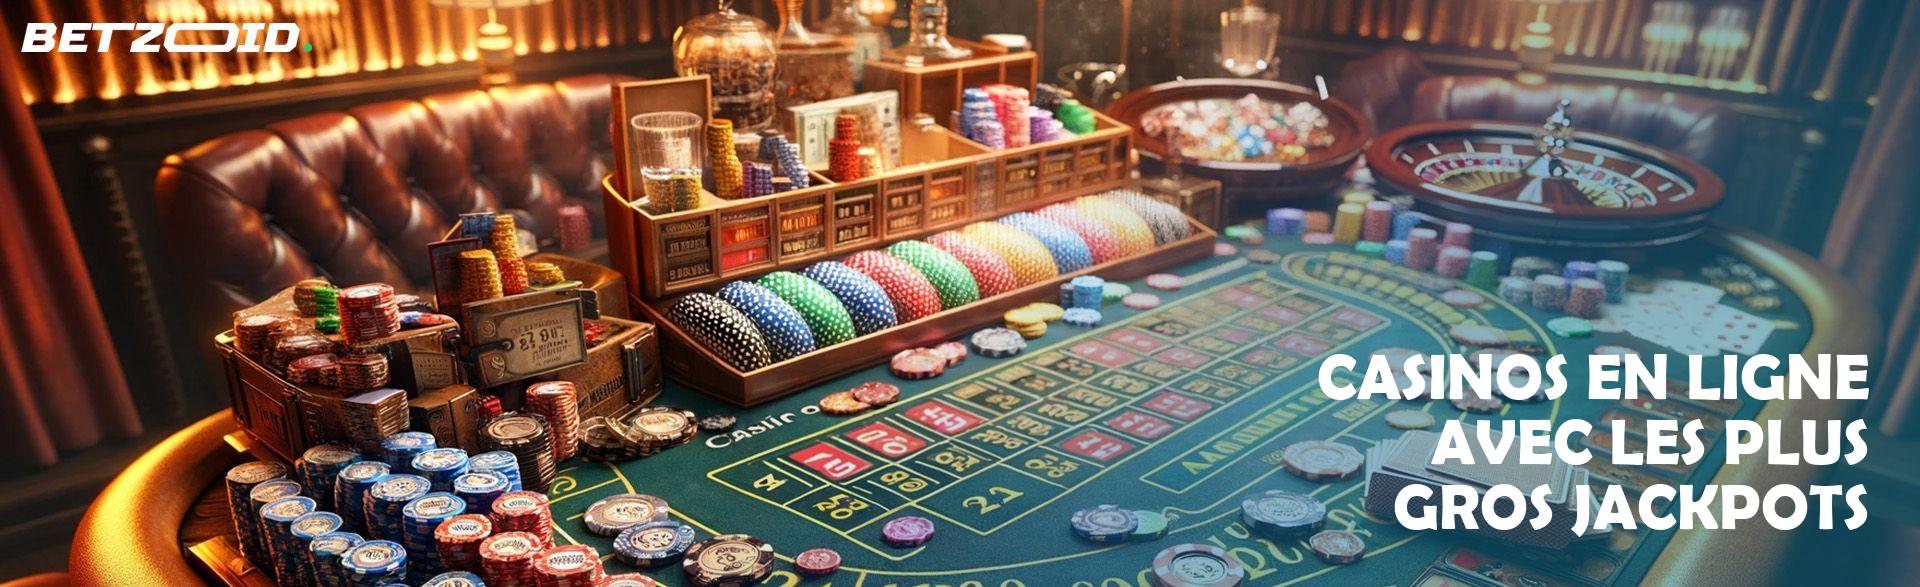 Casinos en Ligne avec les Plus Gros Jackpots.